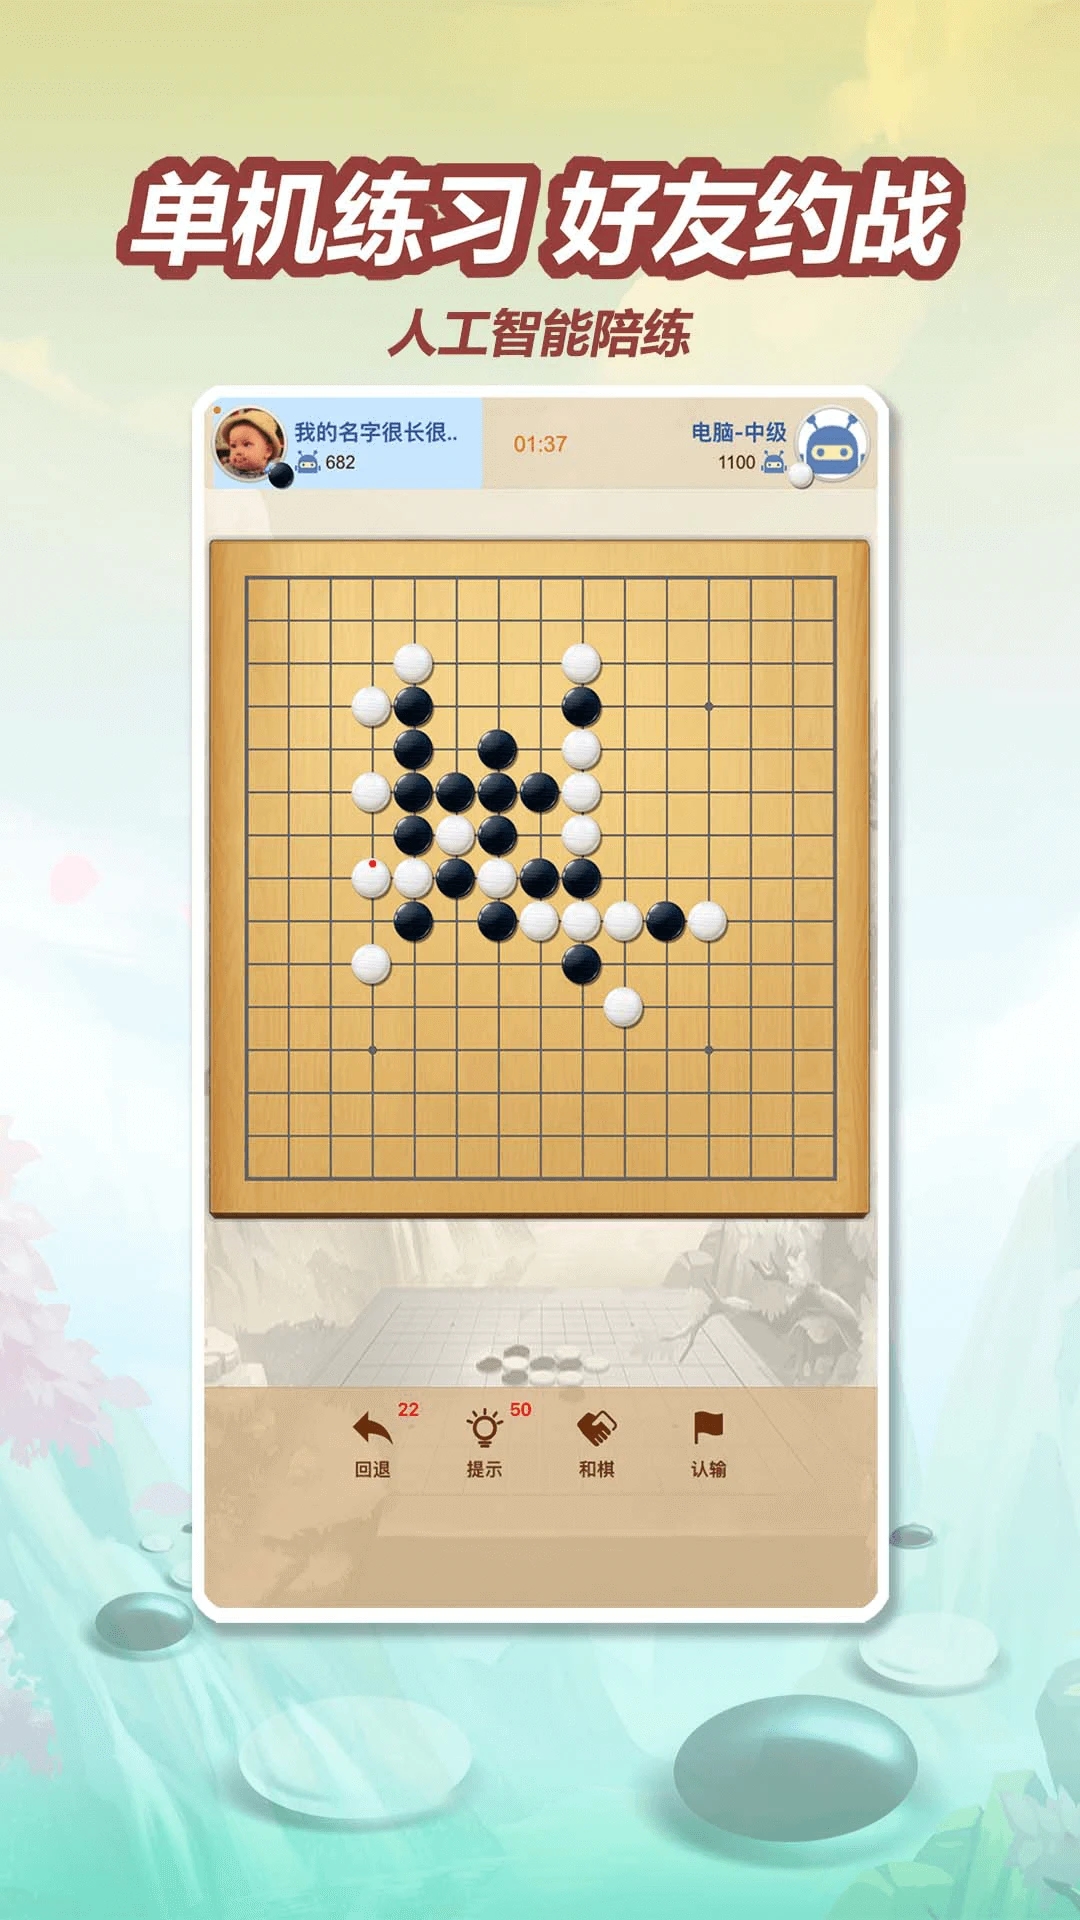 五林五子棋app